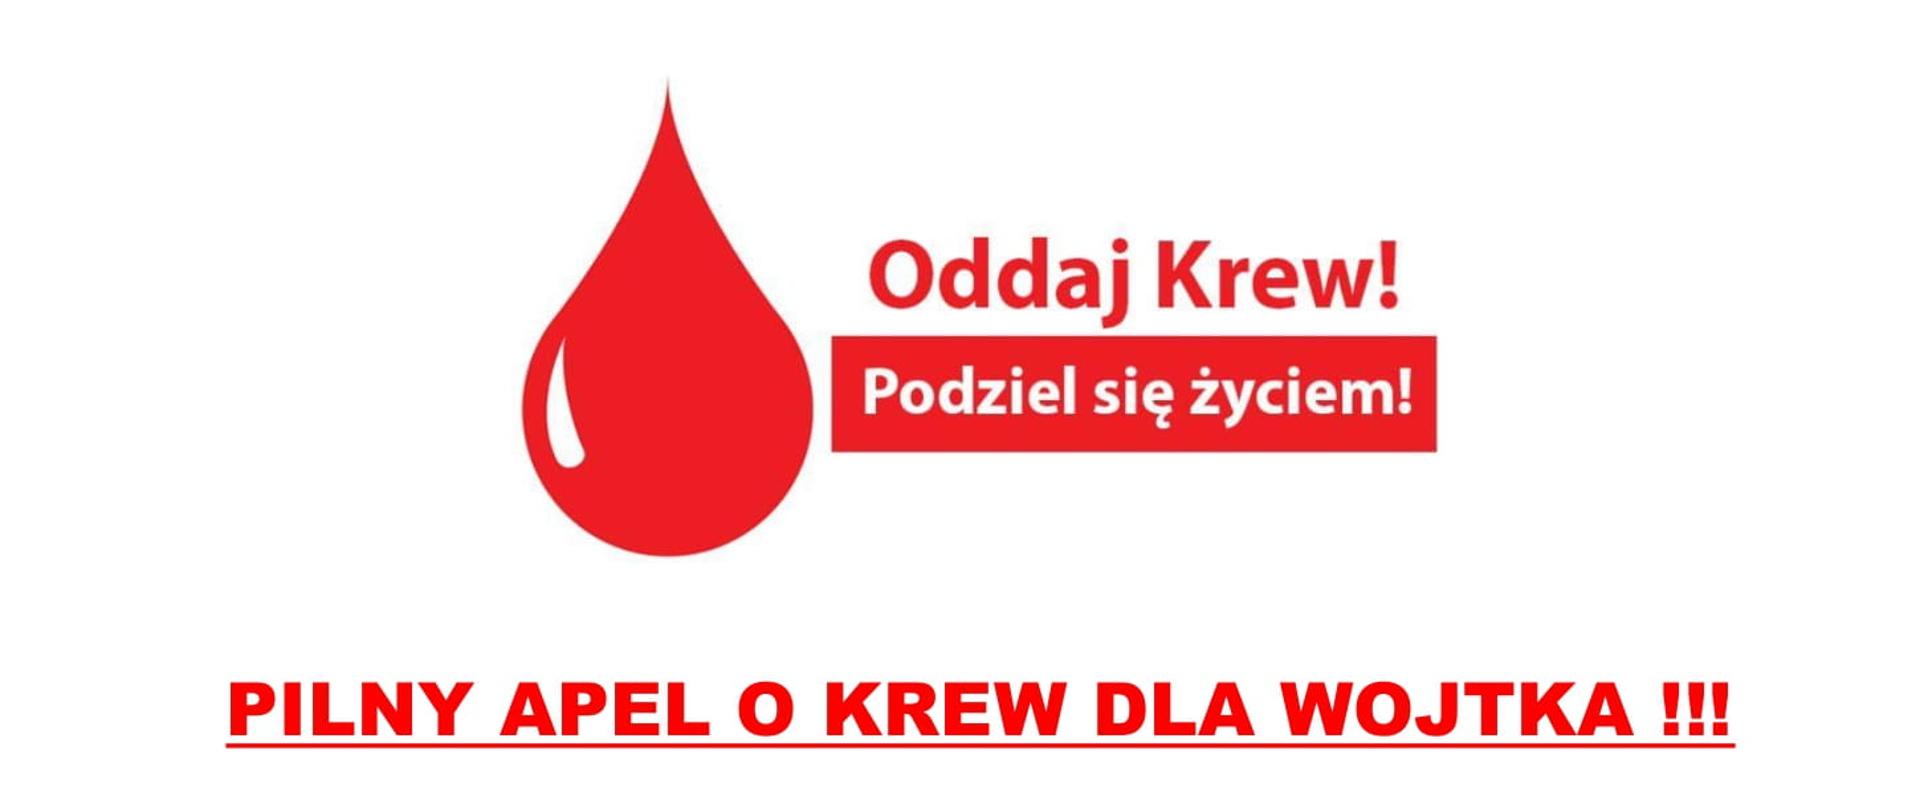 Zdjęcie przedstawia plakat Oddaj krew dla Wojtka